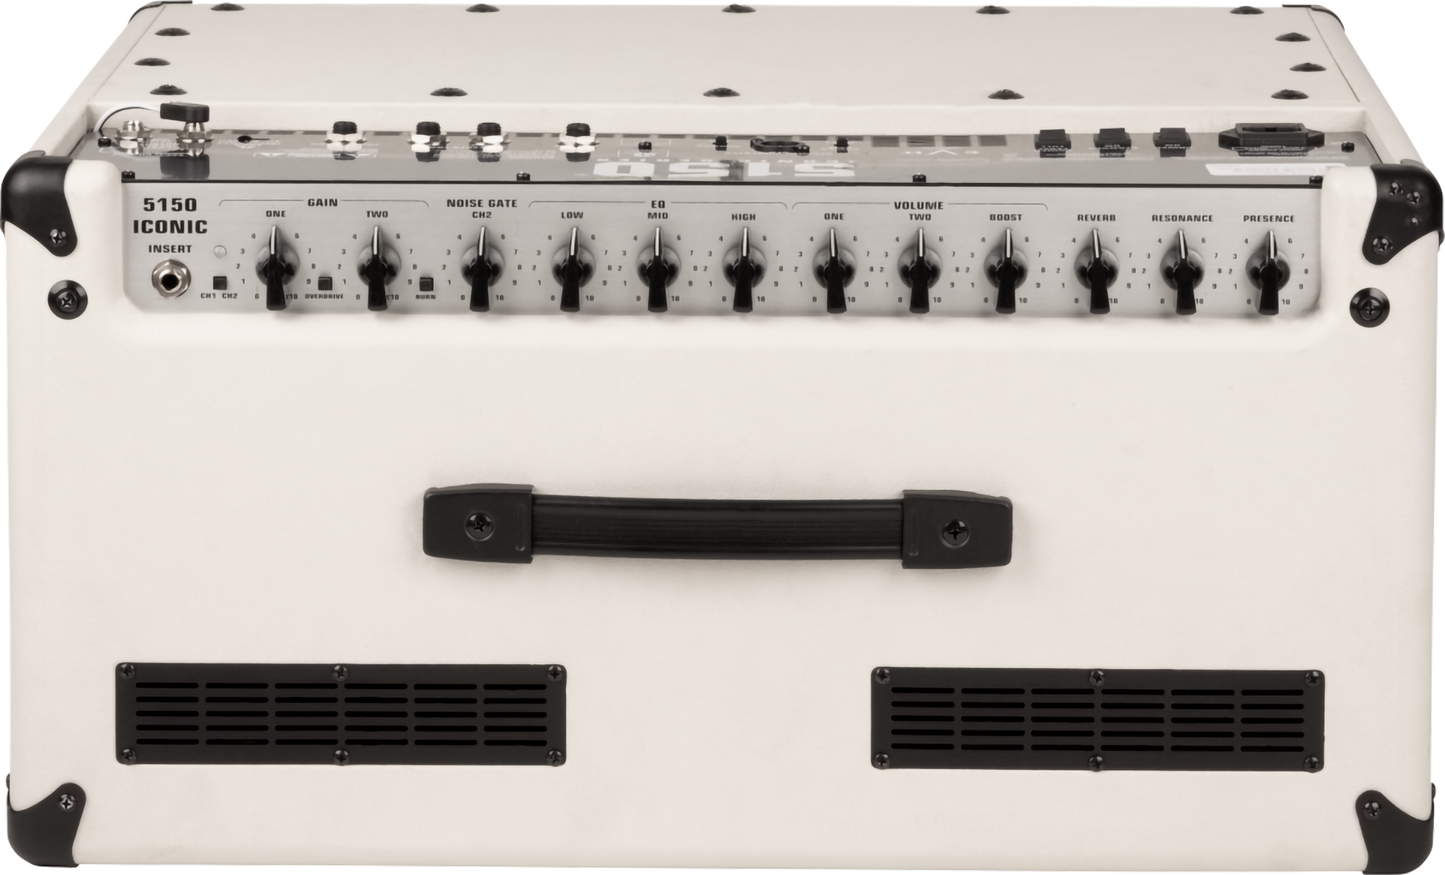 EVH 5150® Iconic Series 40 Watt 1x12” Combo Amplifier in Ivory